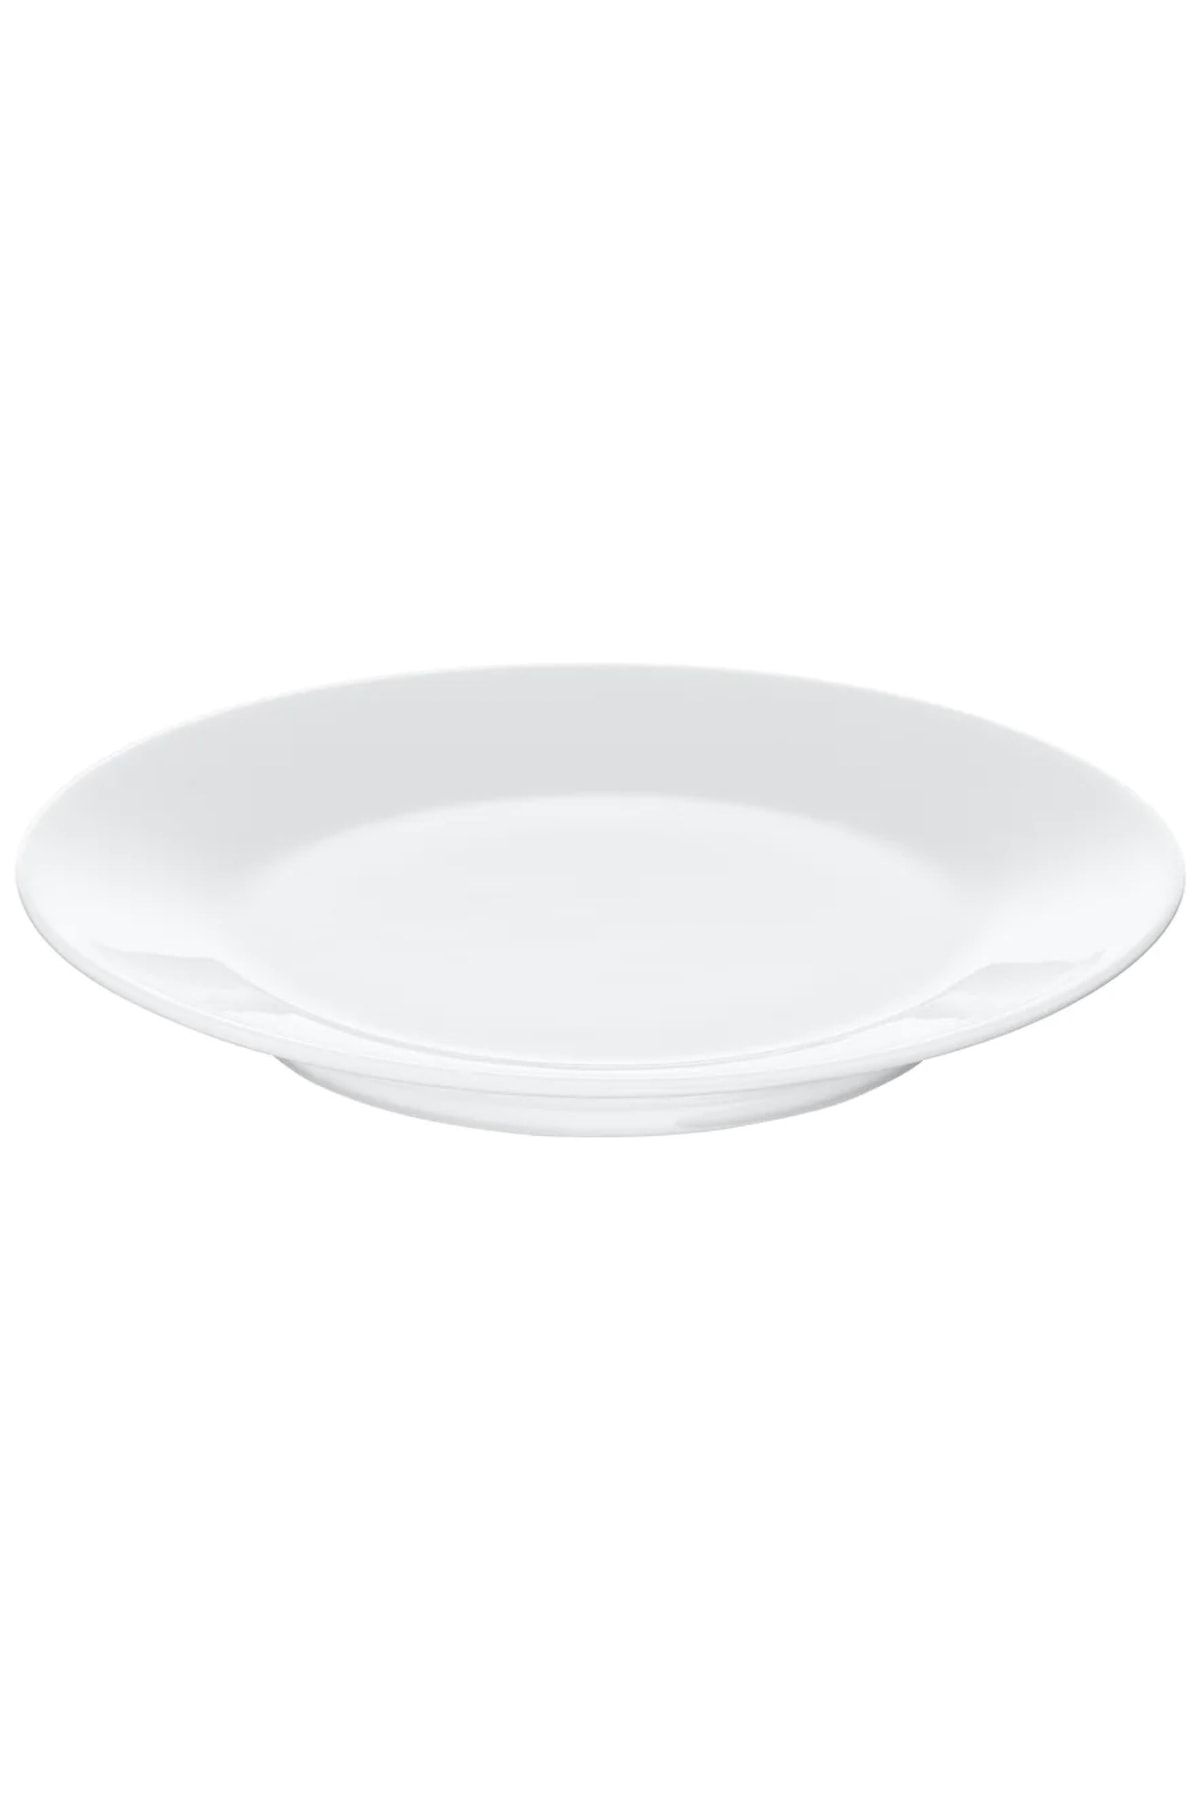 IKEA 365+ 15 Cm Feldispat Porselen Tabak Meze Kahvaltı Tatlı Tabağı Beyaz